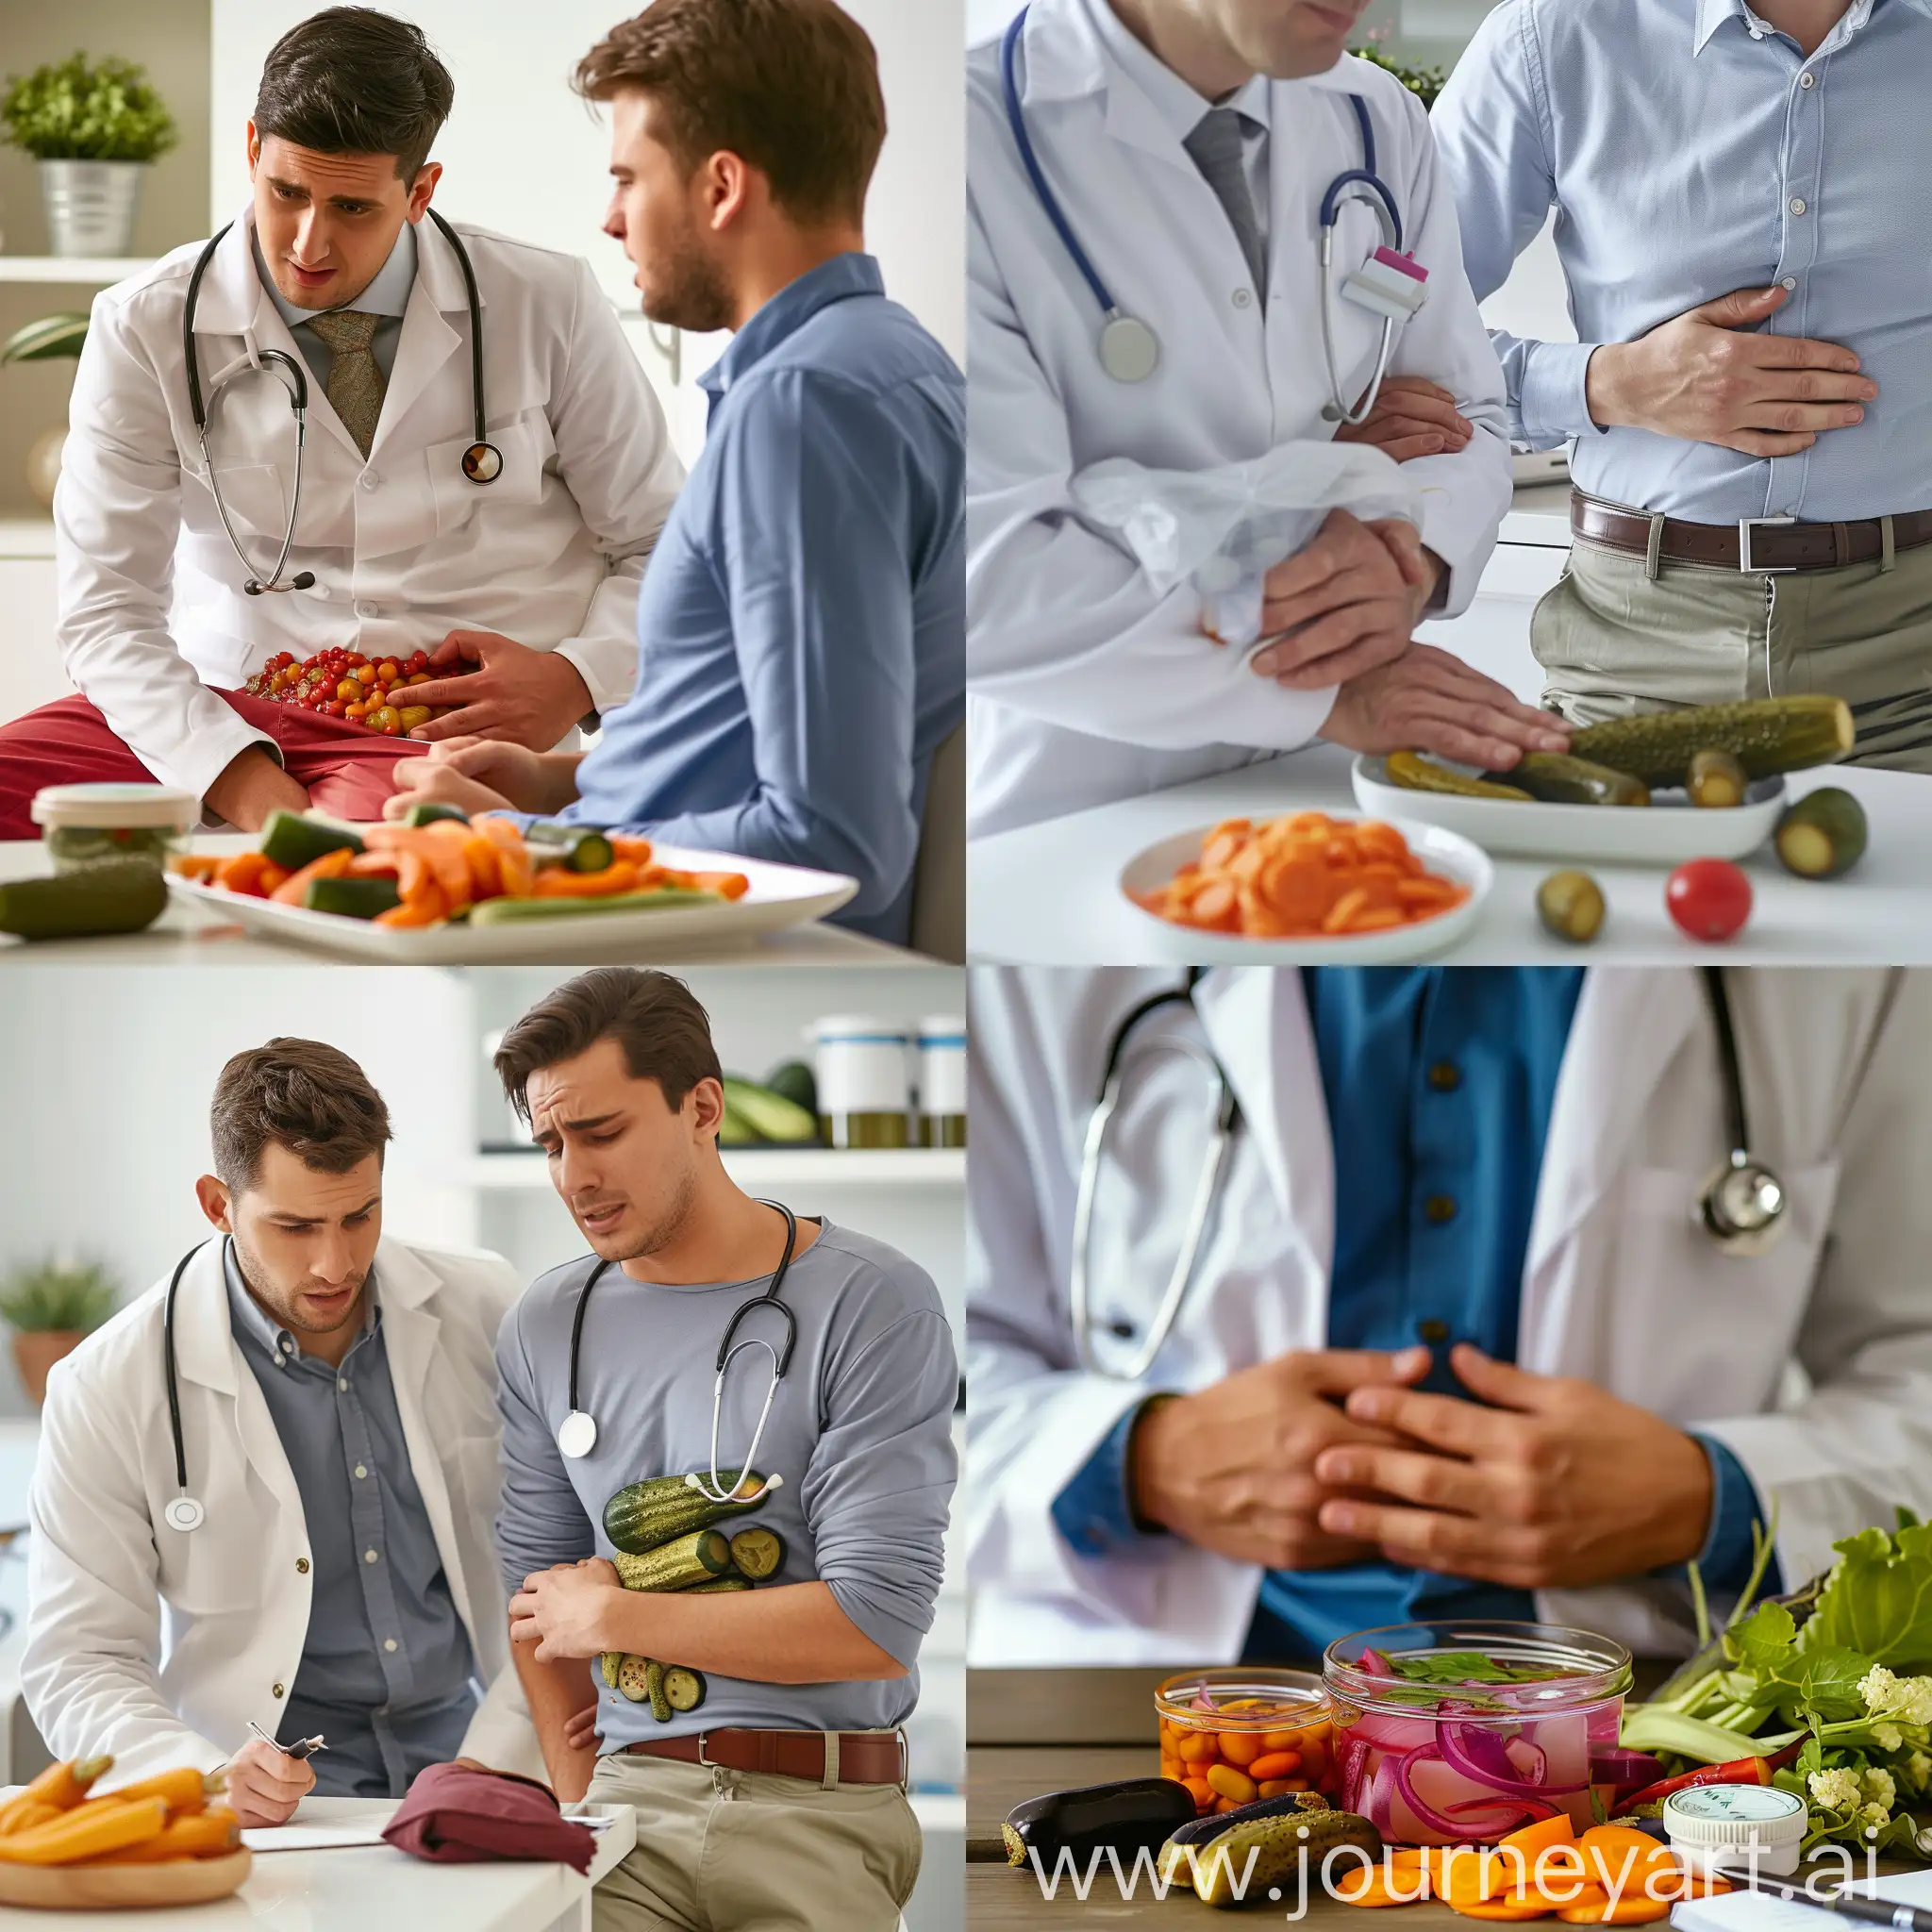 врач чидит у пациента больного, который держиться за живот, так как наелся квашенных и маринованных овощей, которые стоят рядом